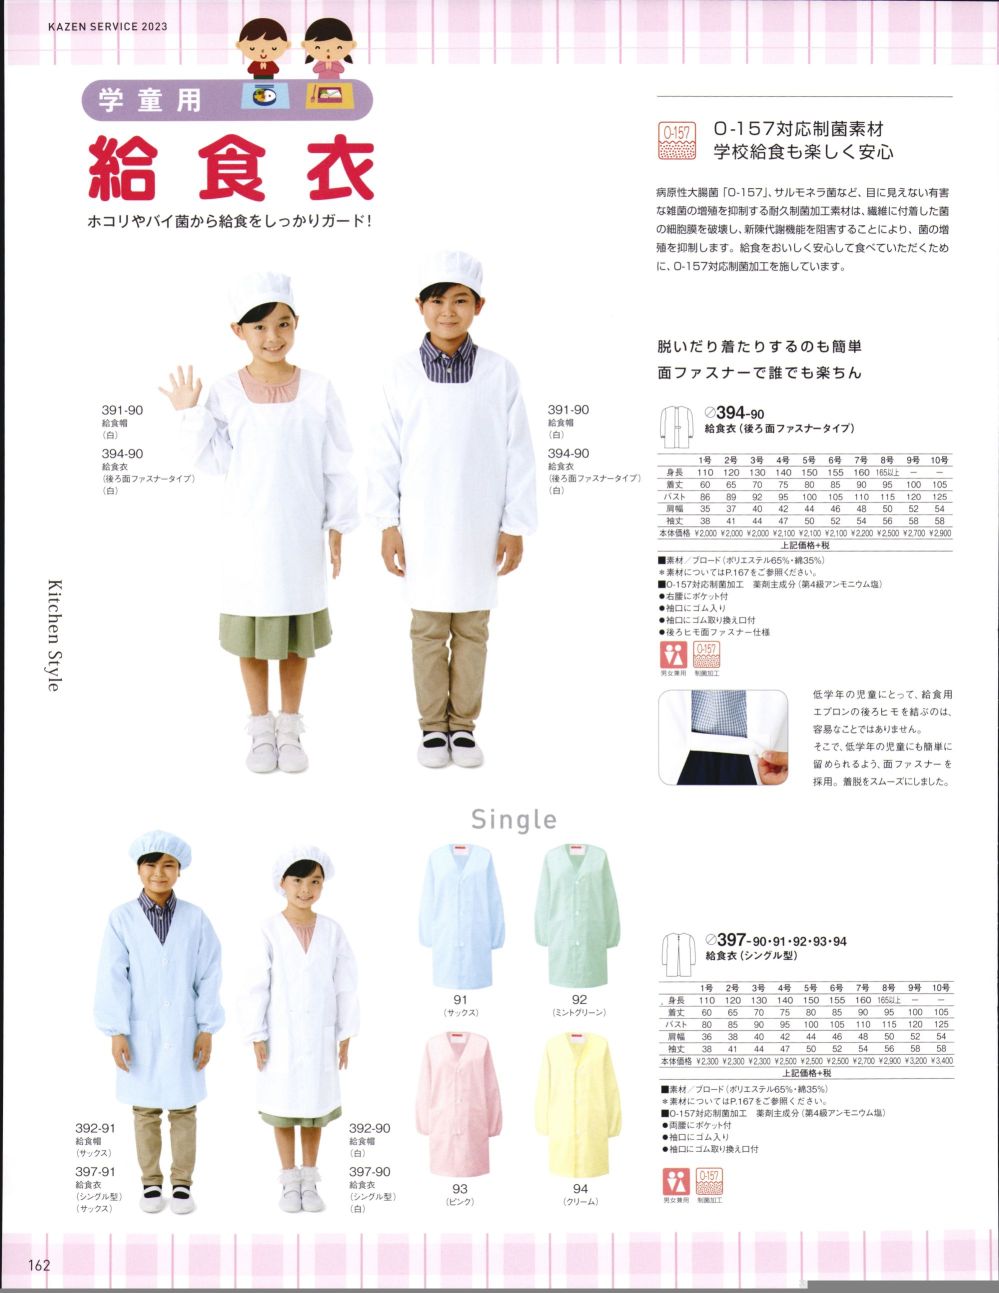 ユニフォーム1.COM 食品白衣jp 給食用 KAZEN カゼン サービスウェア 